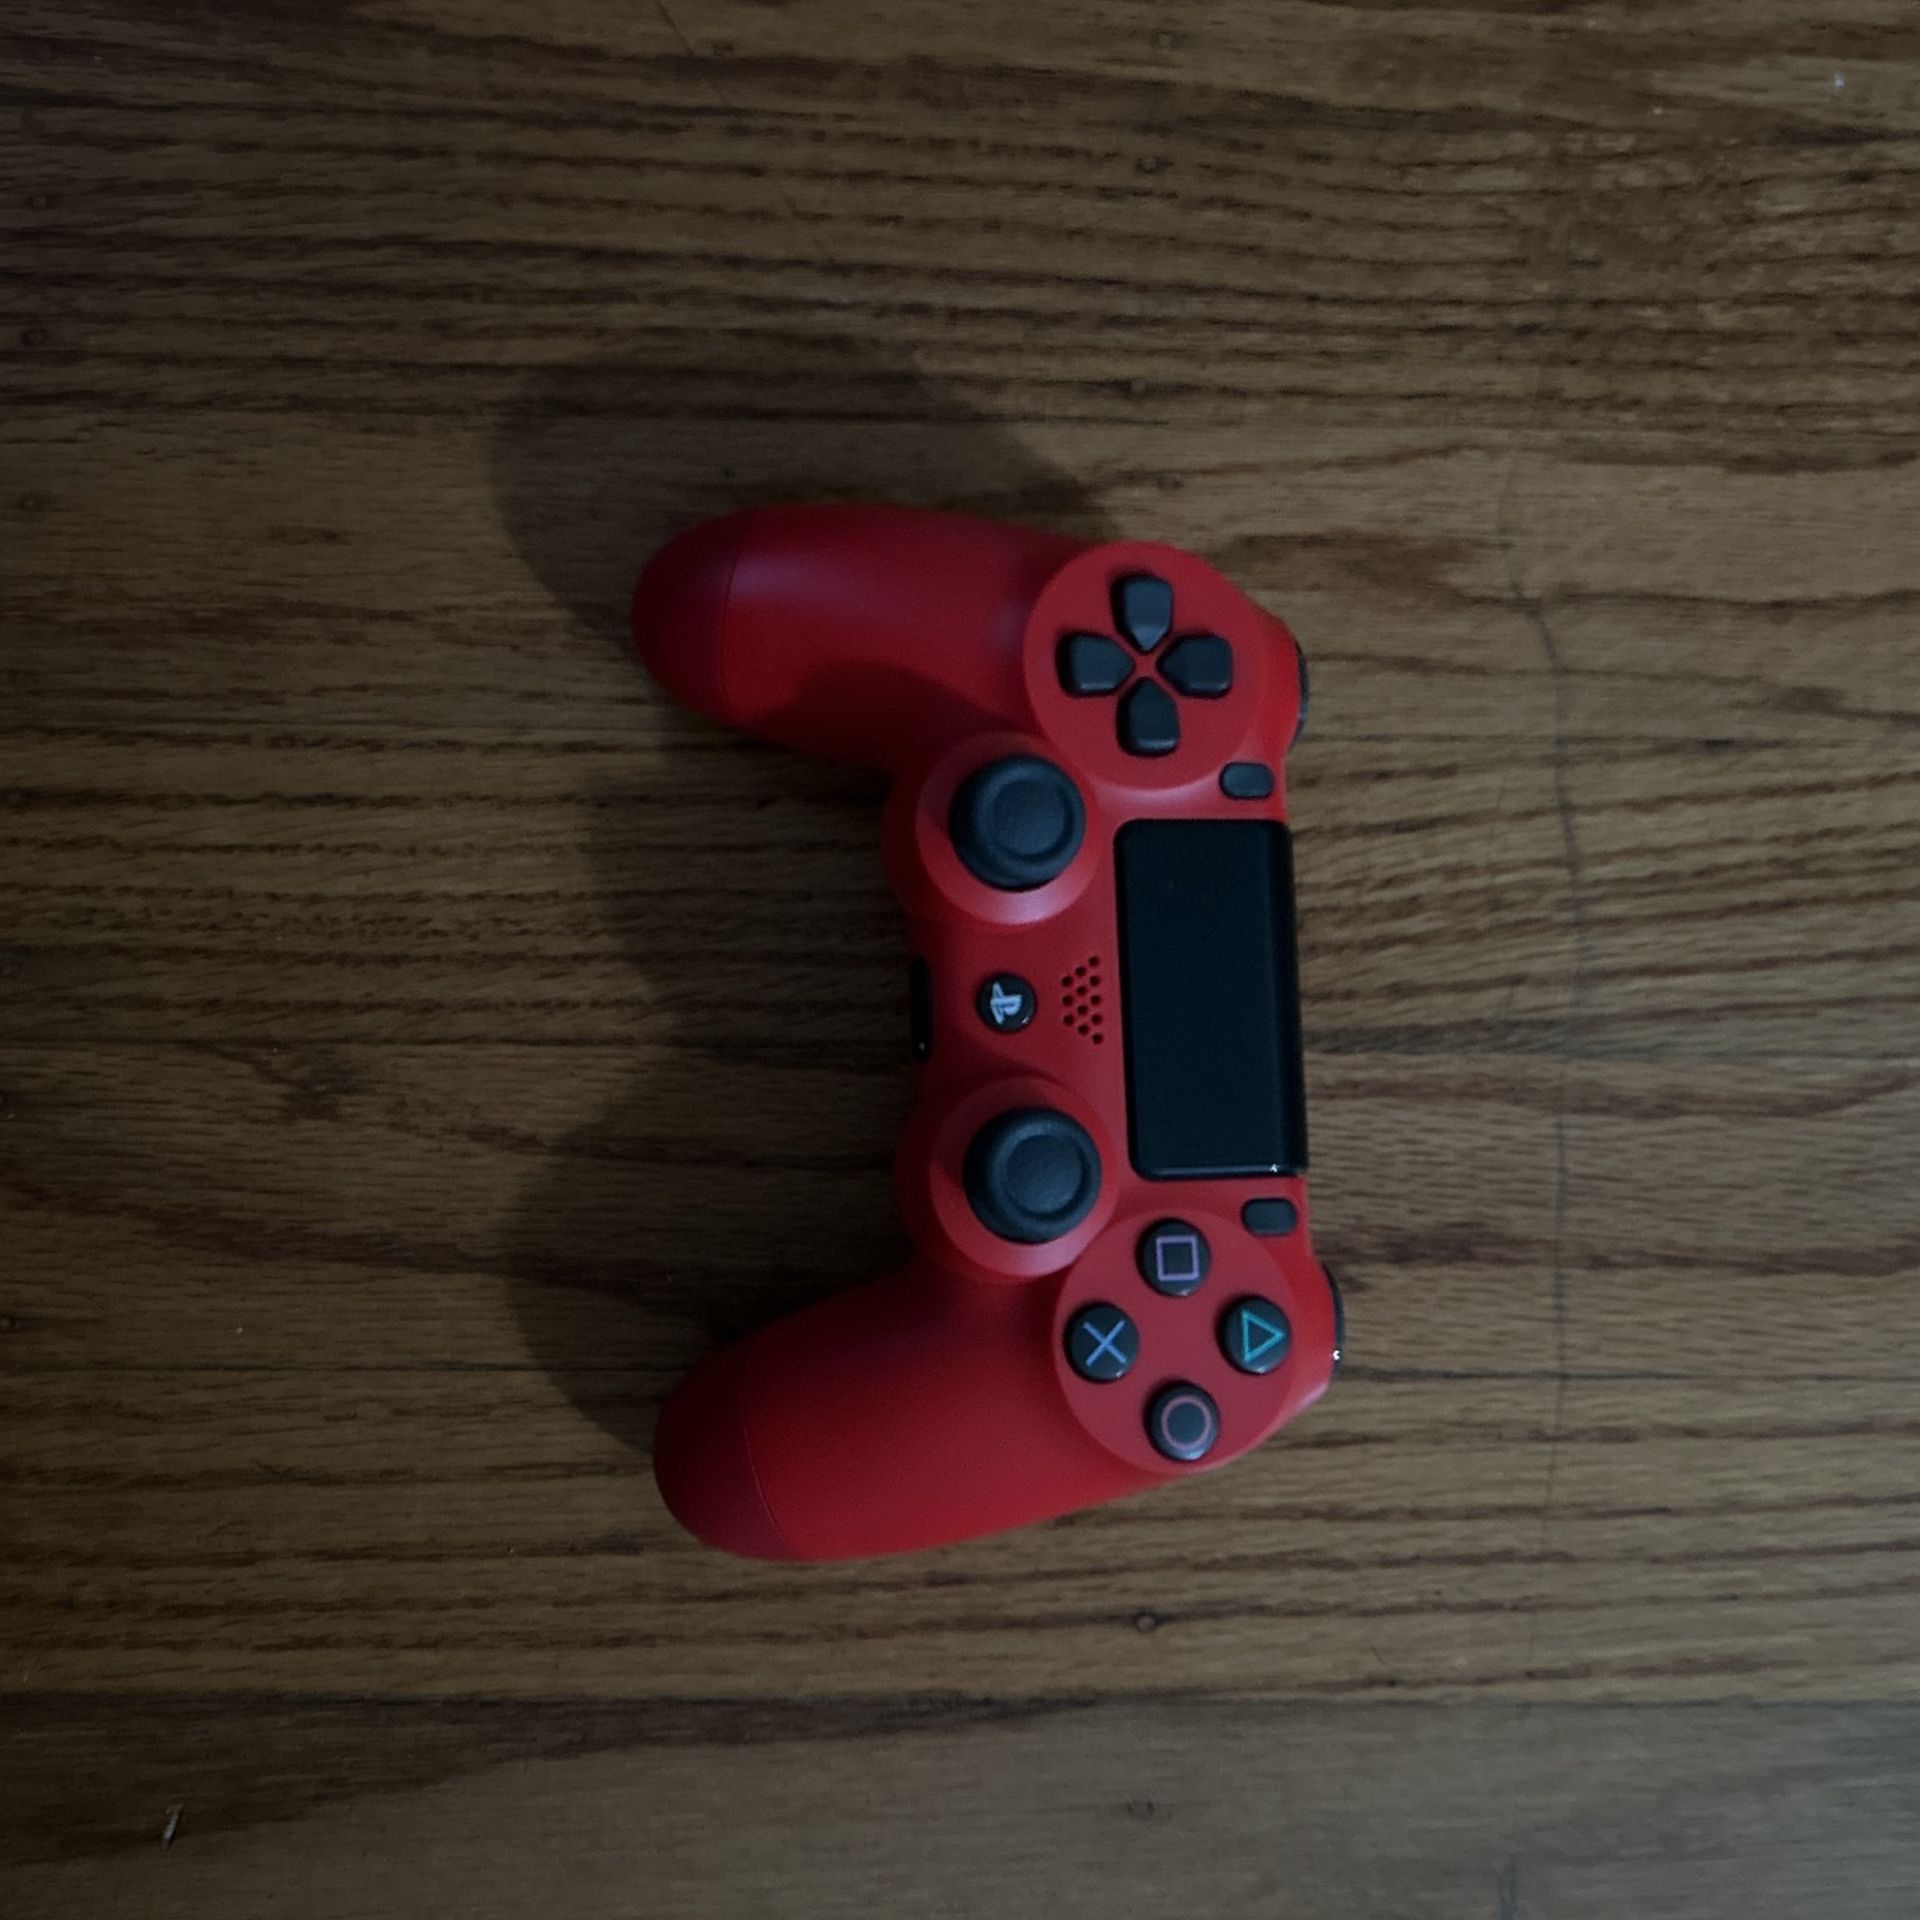 PS4 DualShock Controller